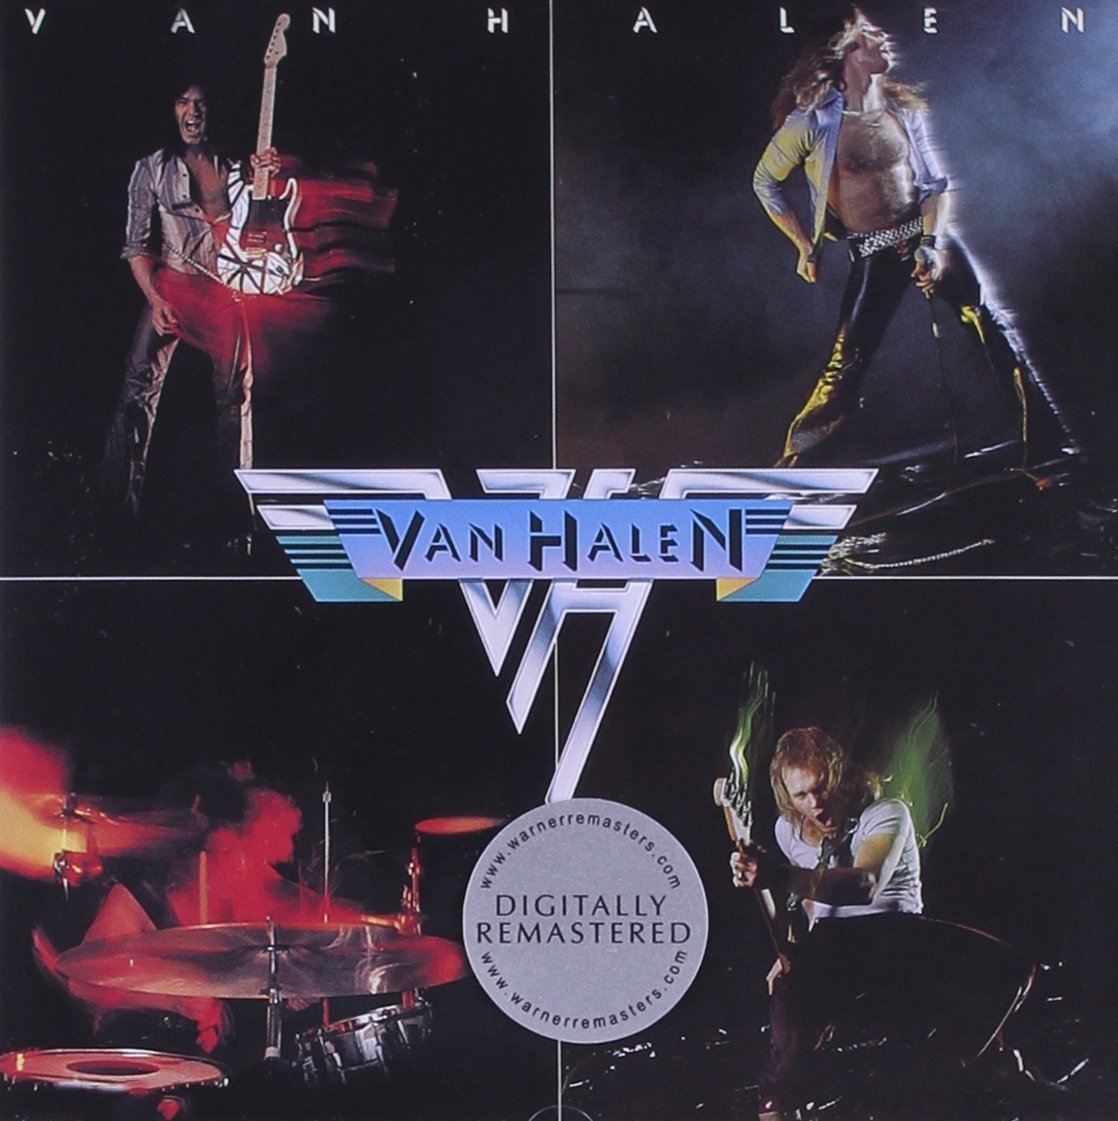 Van Halen remastered